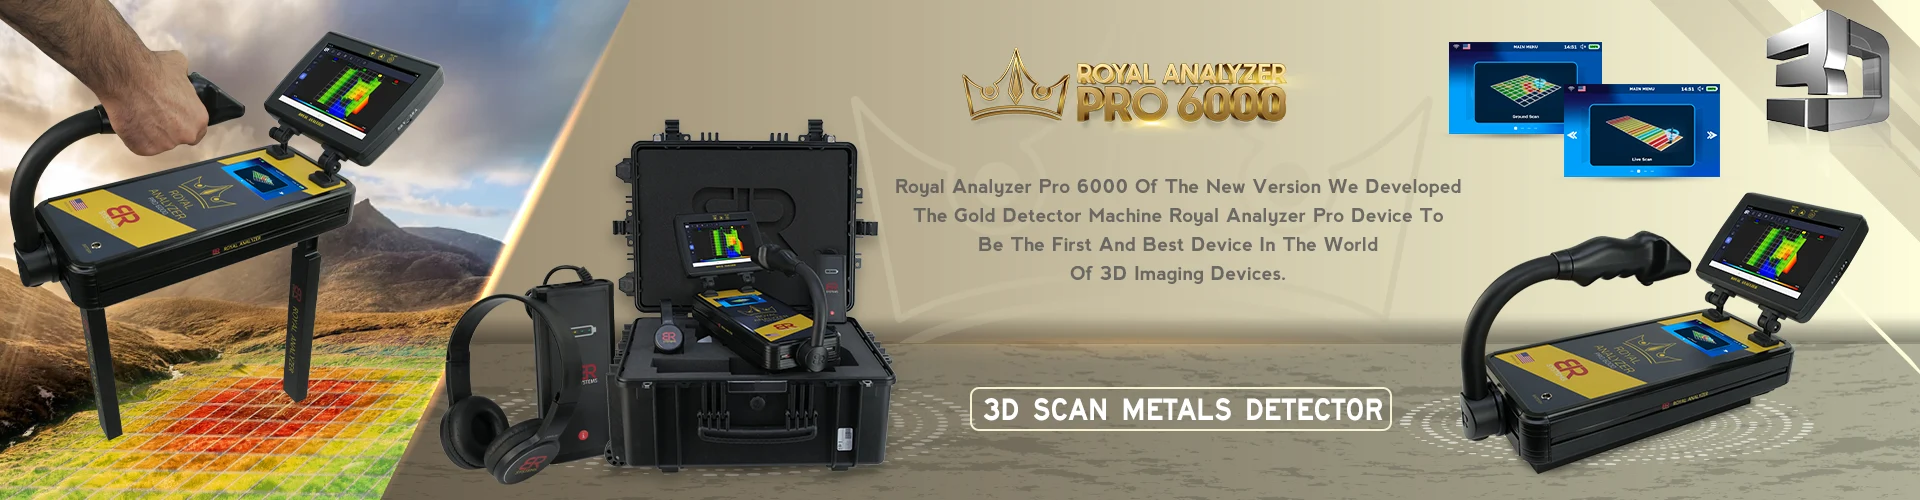 Royal Analyzer Pro 6000 altın dedektörü 3d tarayıcı